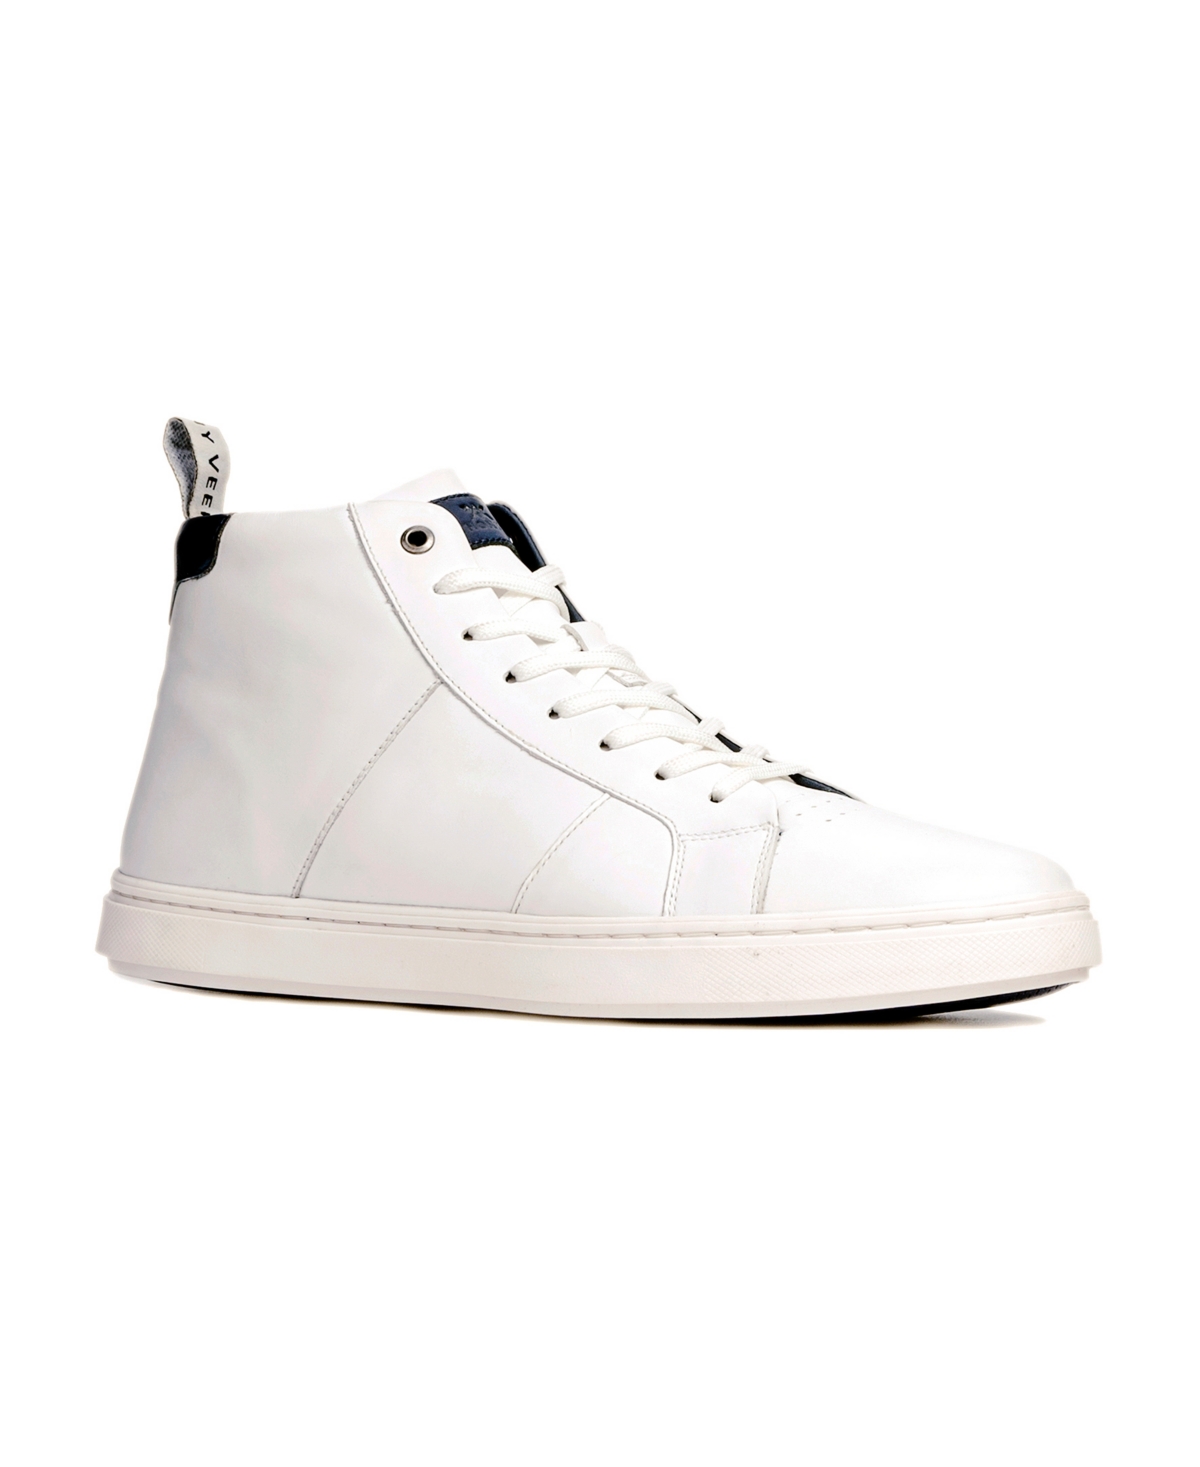 Men's Kips High-Top Fashion Sneakers - White